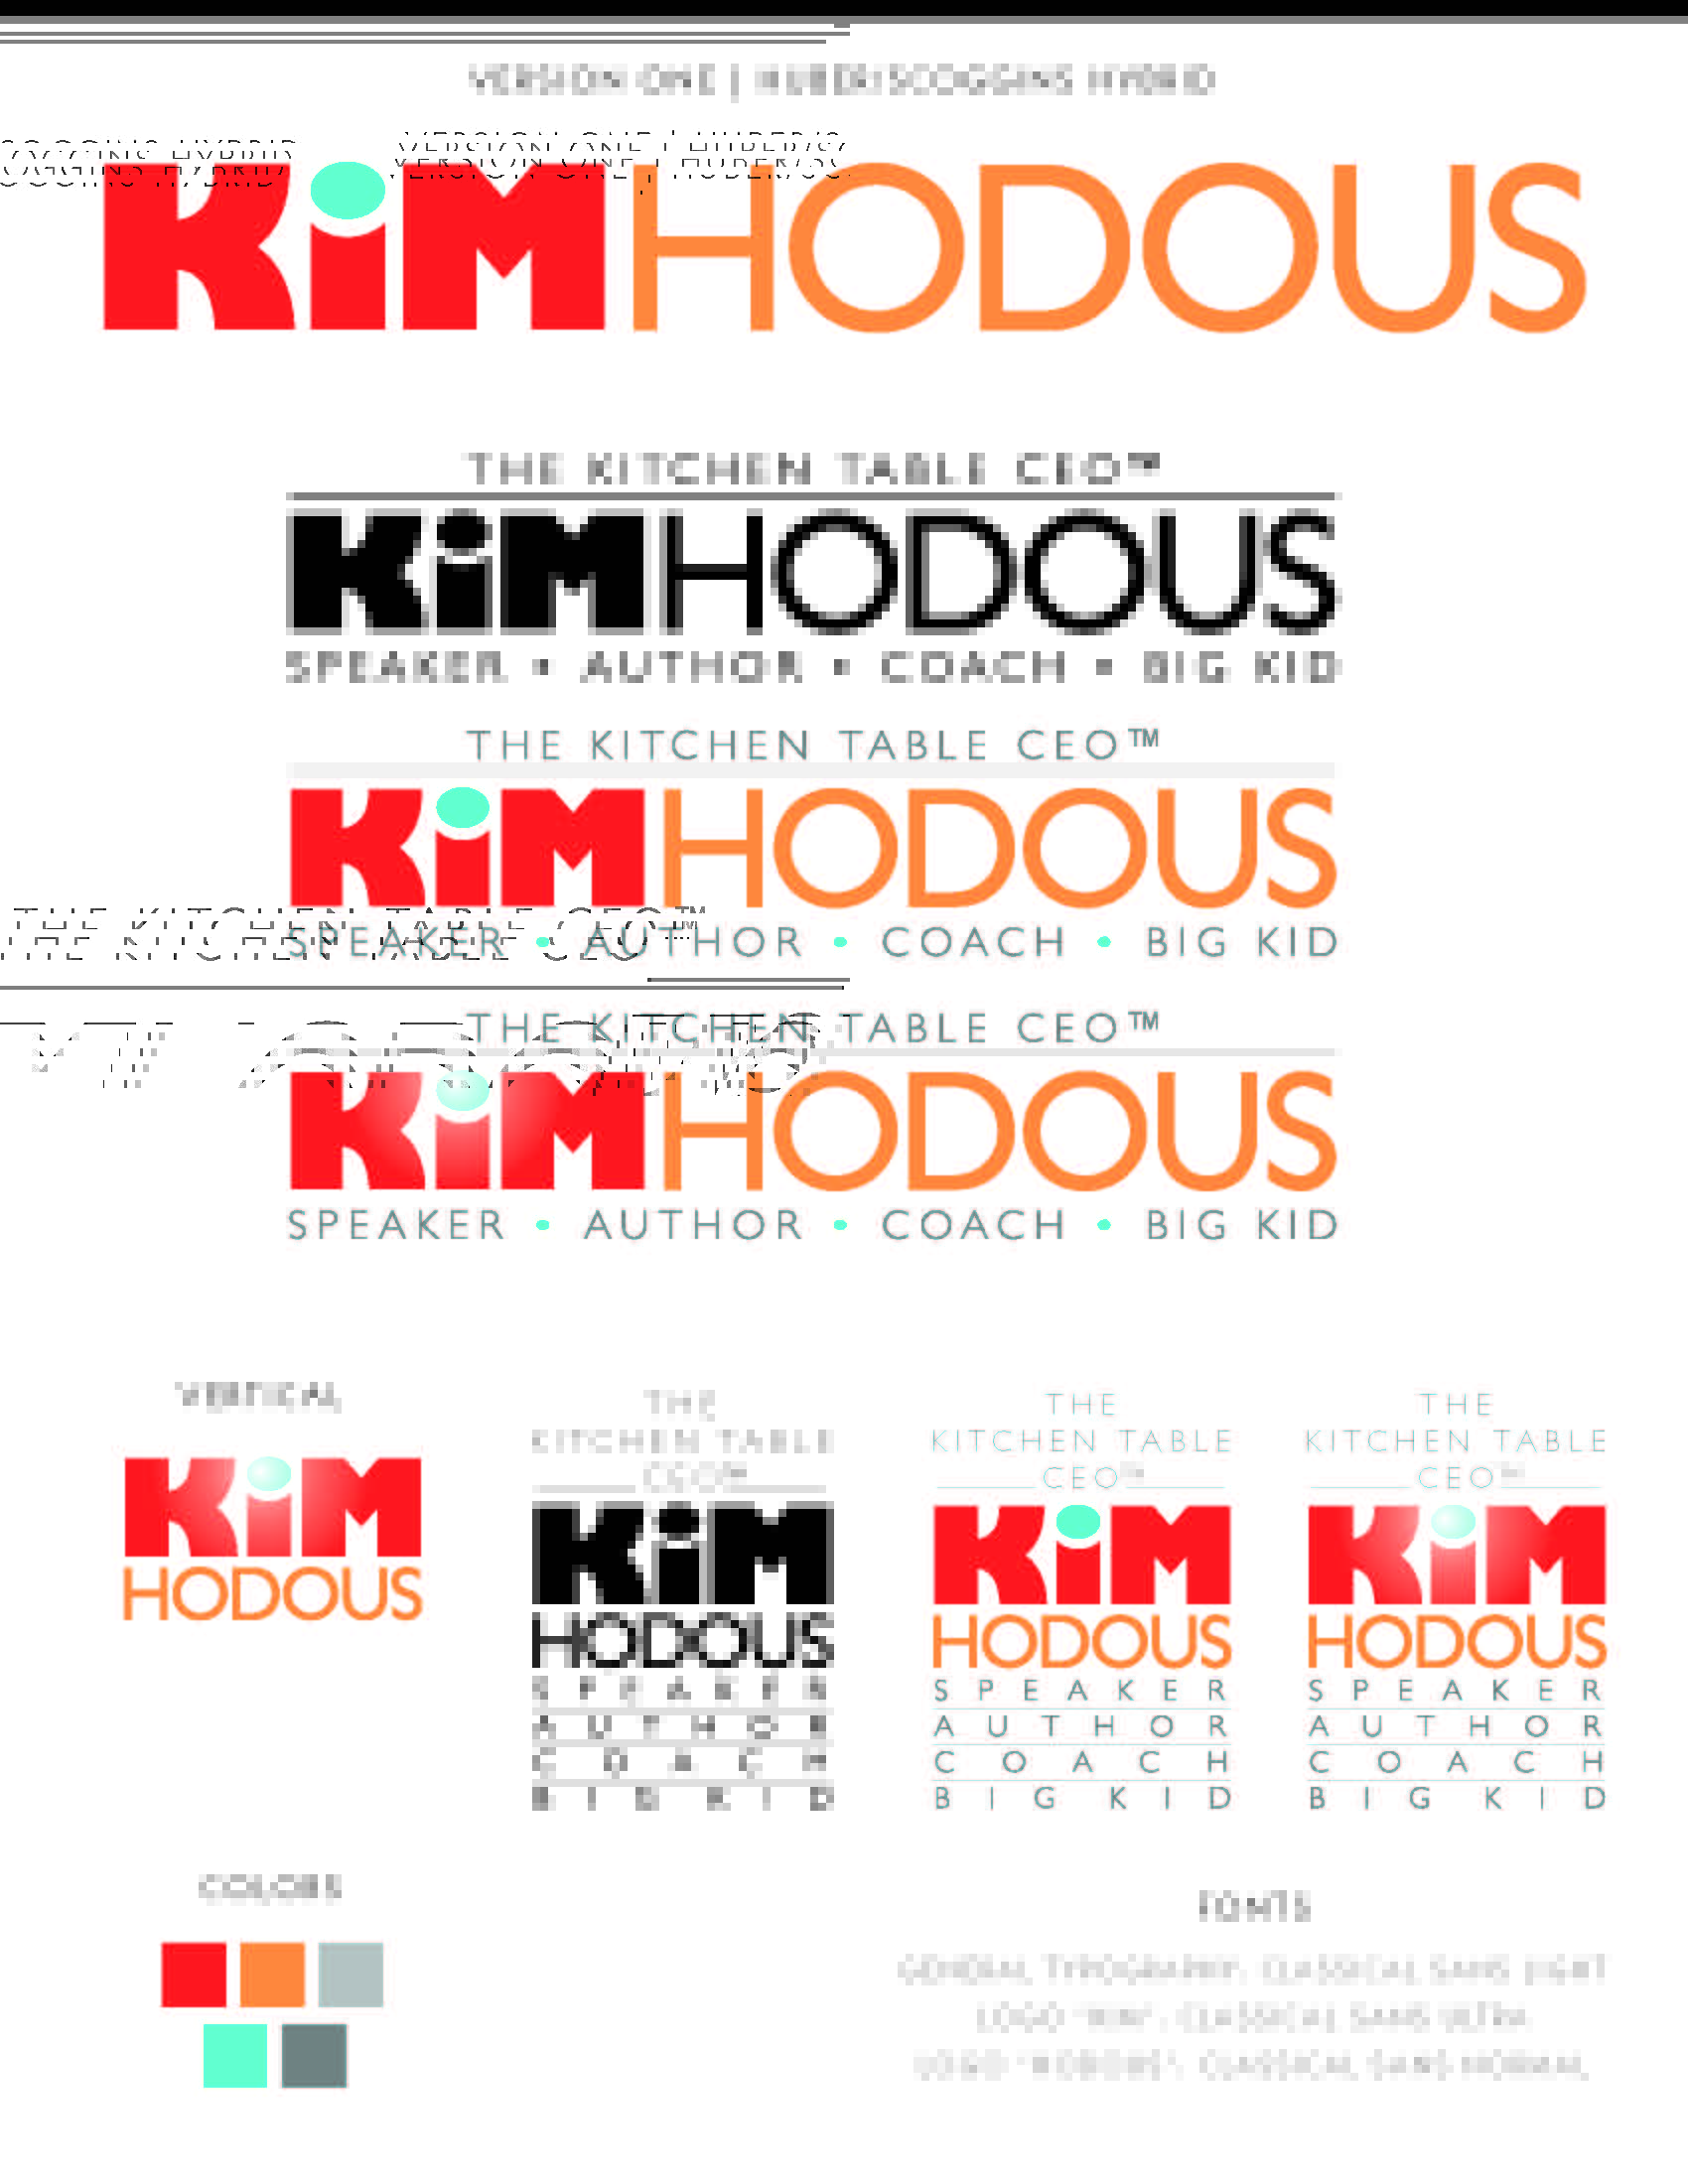 Kim Hodous Graphic Design